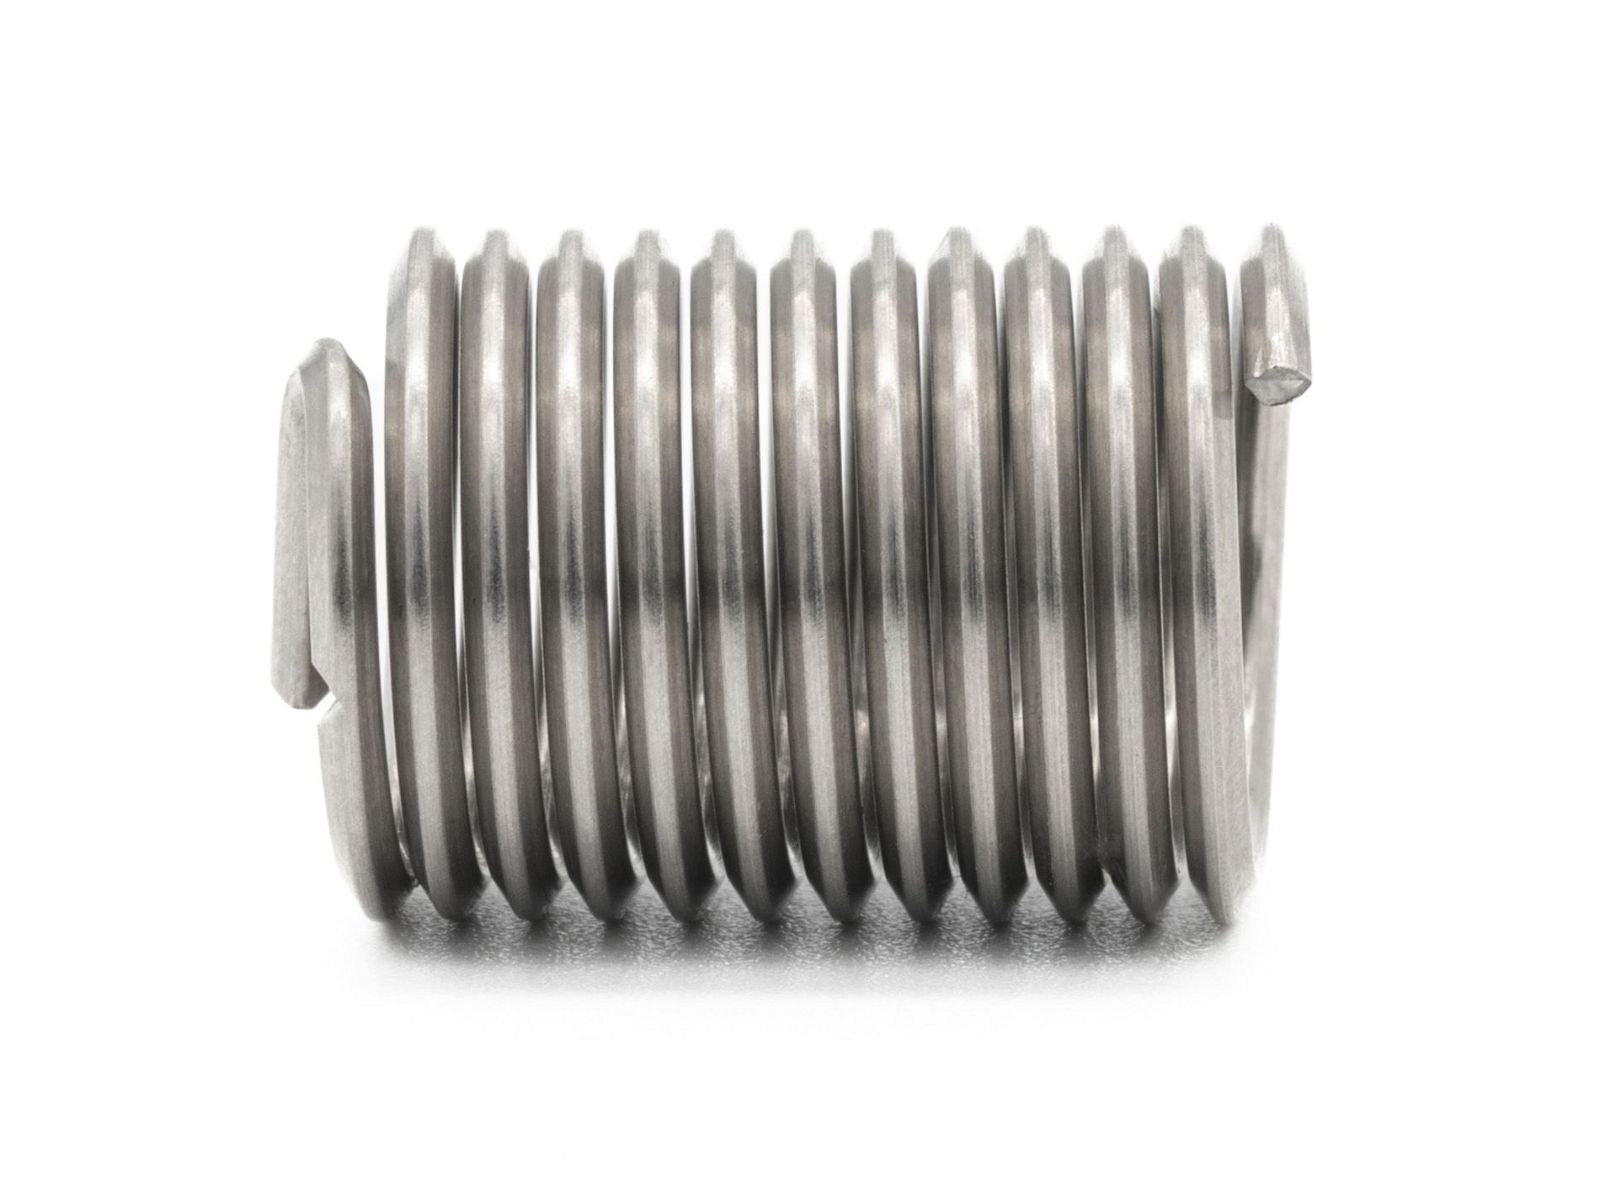 BaerCoil Wire Thread Inserts UNF No. 10 x 32 - 2.0 D (9.65 mm) 10 pcs.